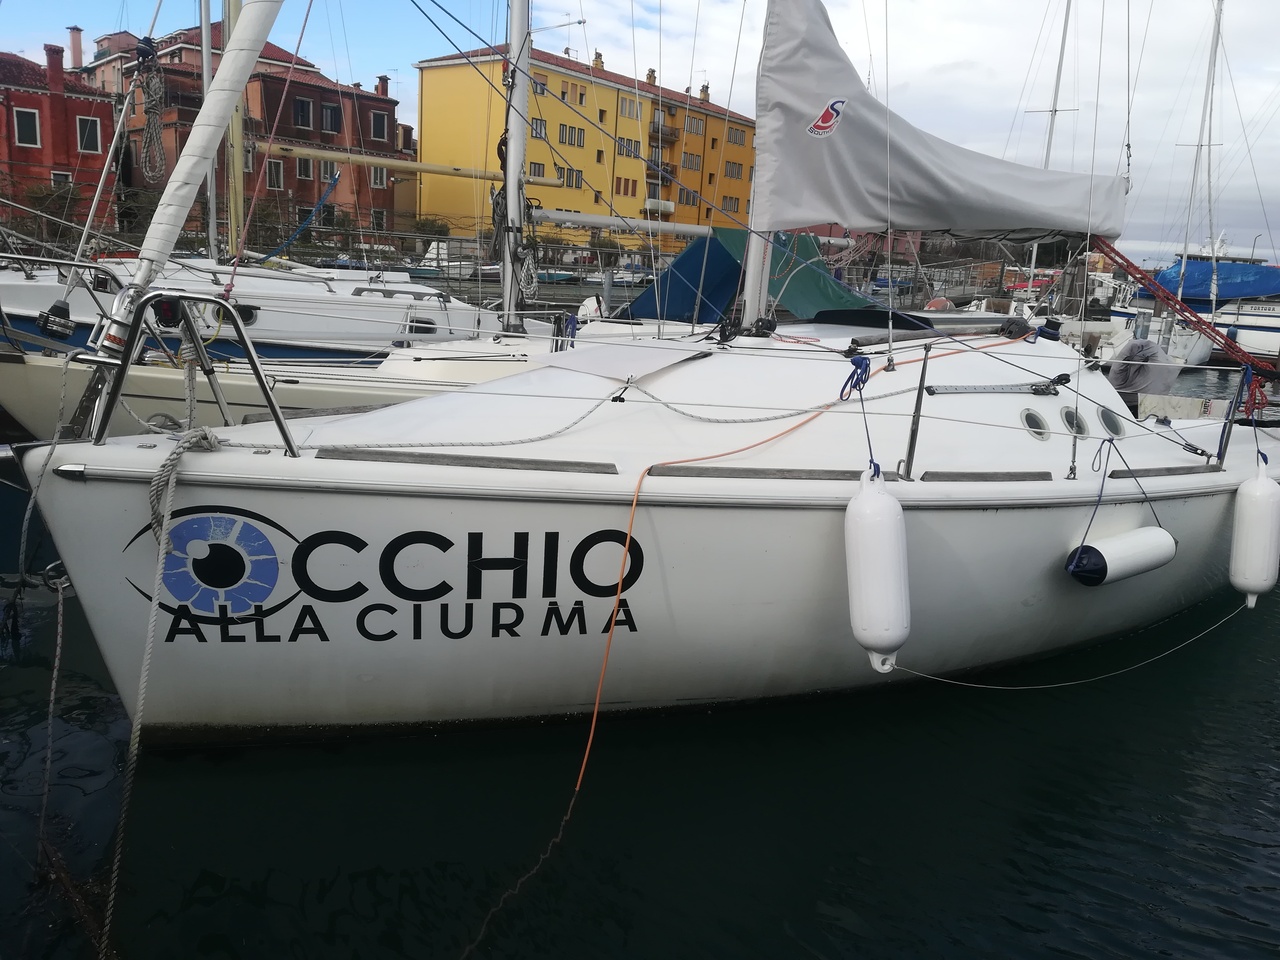 Occhio alla ciurma (Watch out the crew)